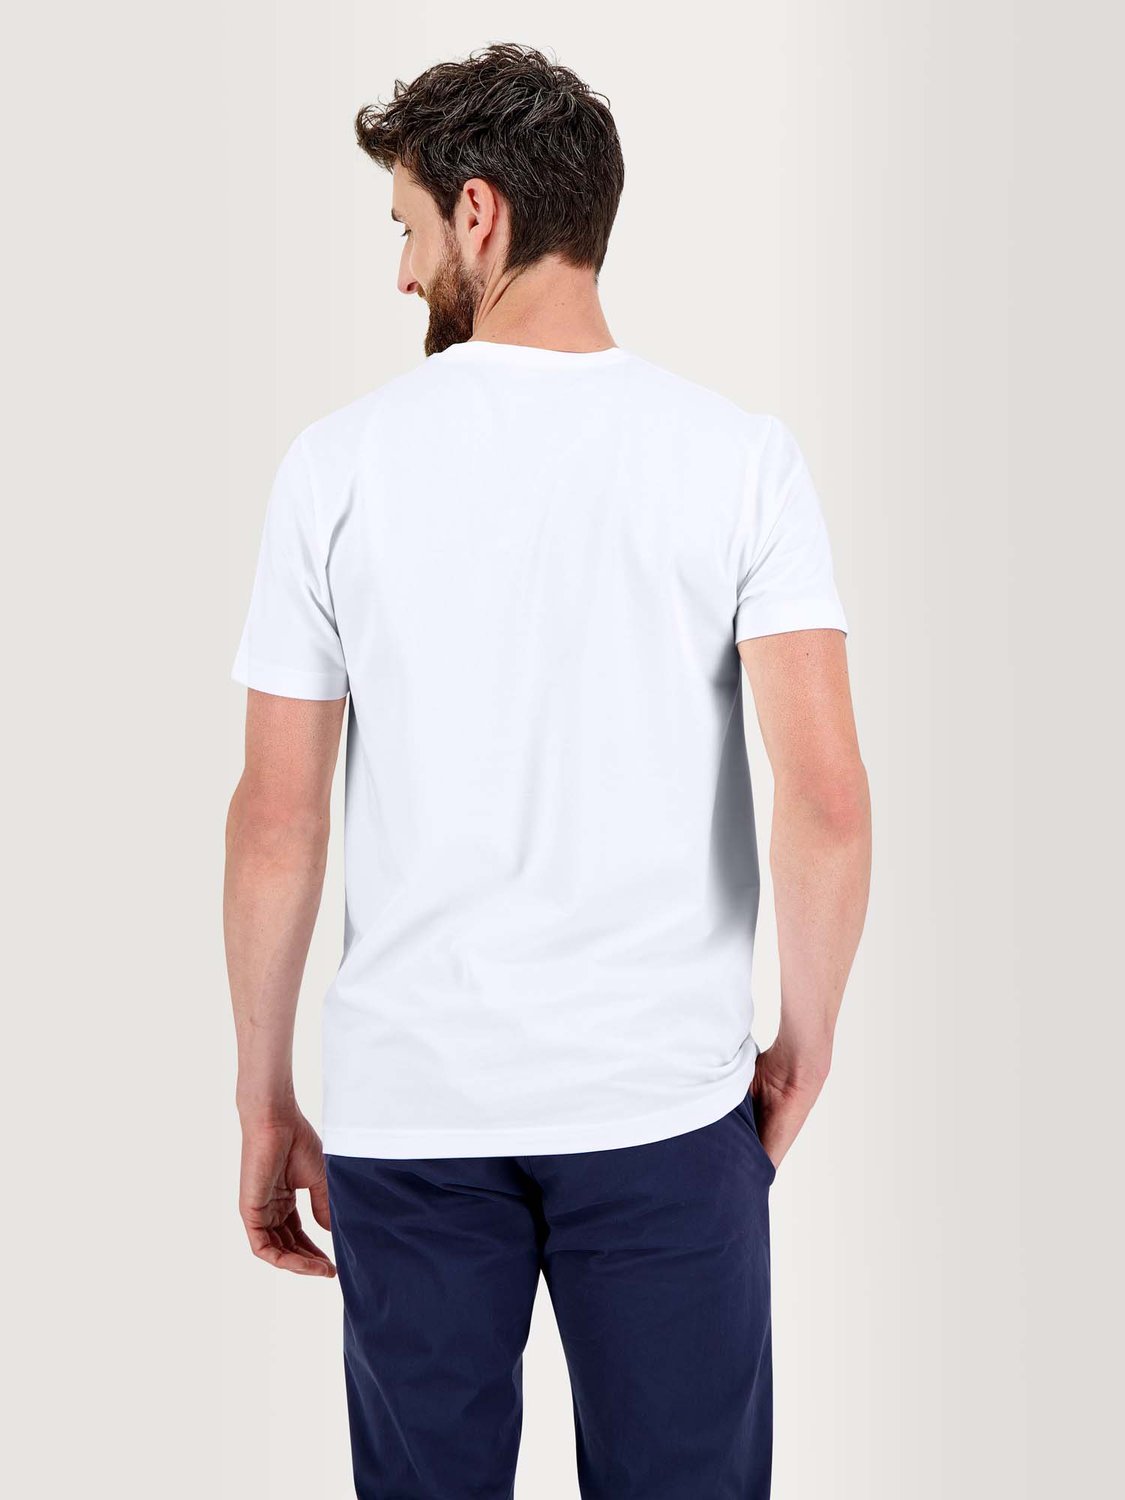 Tee Shirt Homme Micro Piqué Stretch Blanc